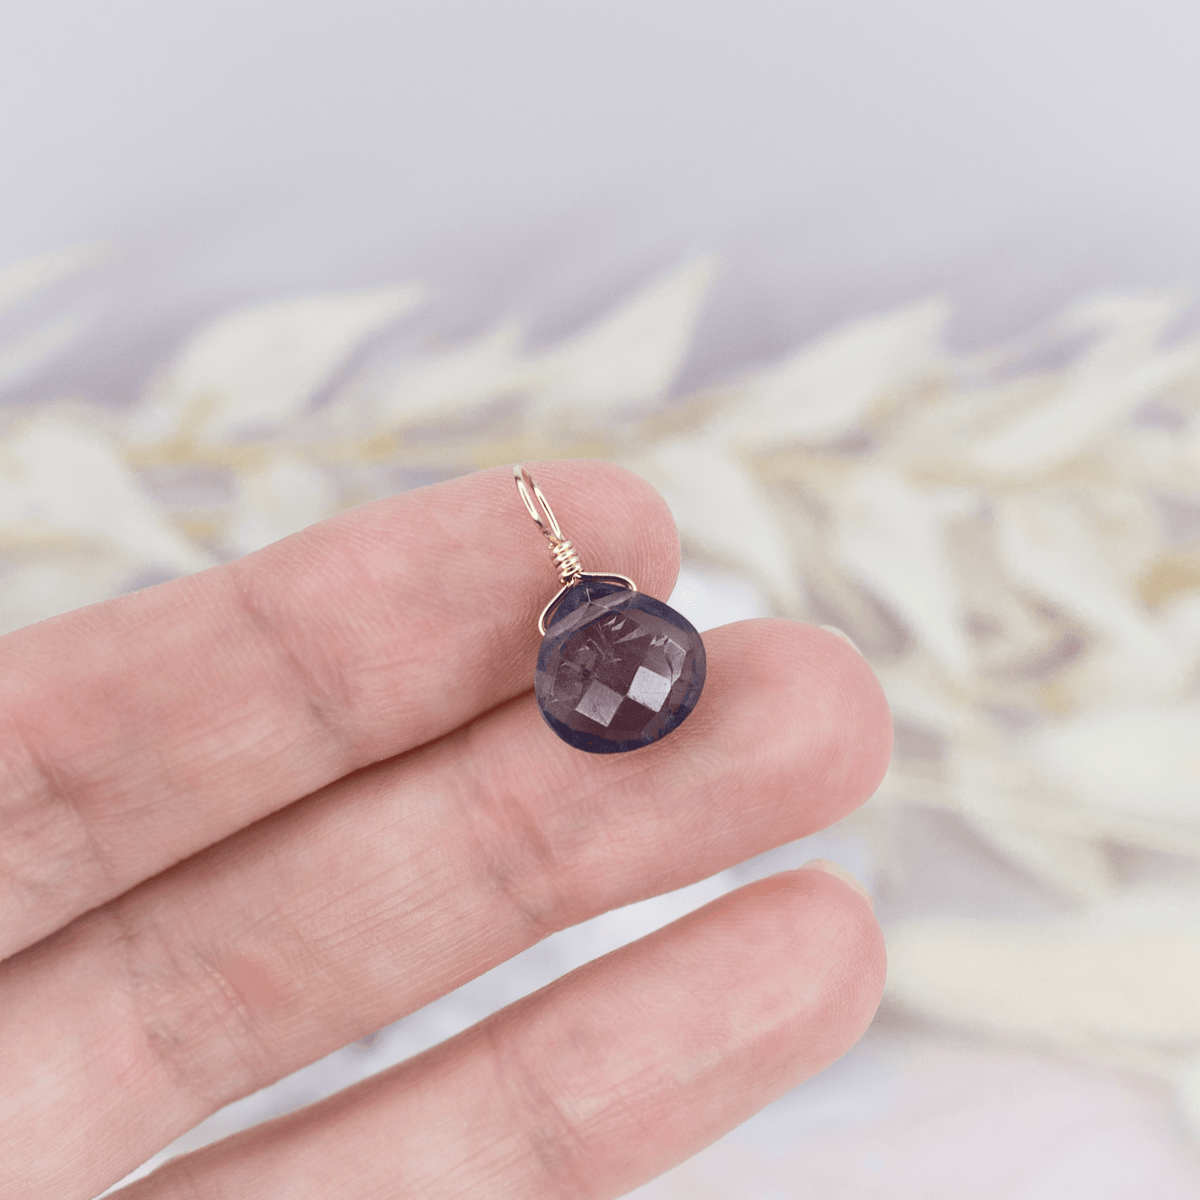 Tiny Iolite Teardrop Gemstone Pendant - Tiny Iolite Teardrop Gemstone Pendant - 14k Gold Fill - Luna Tide Handmade Crystal Jewellery